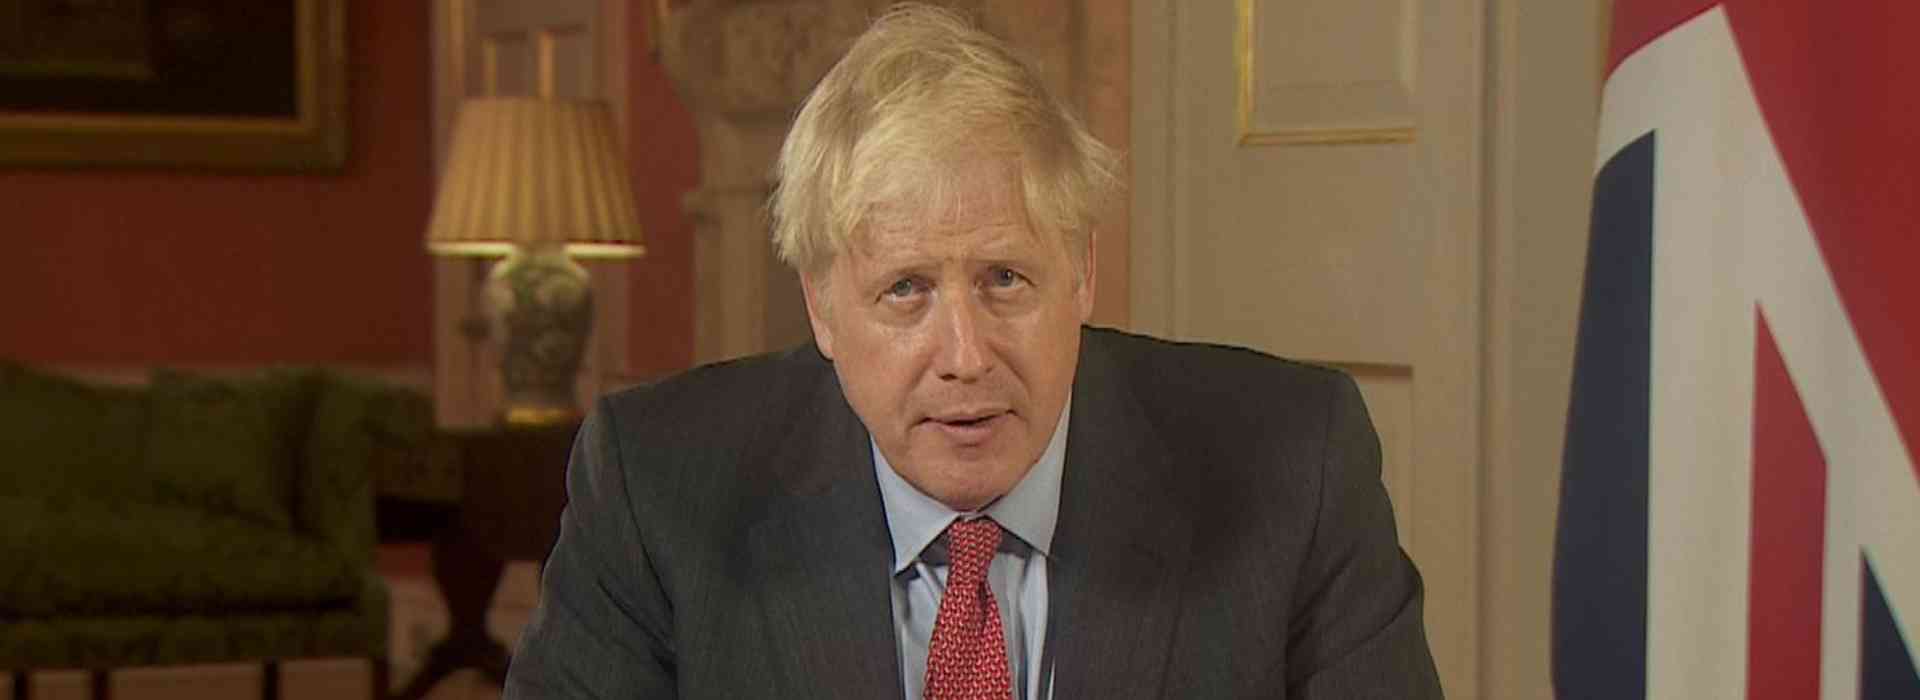 Il primo ministro inglese, Boris Johnson, parla alla tv